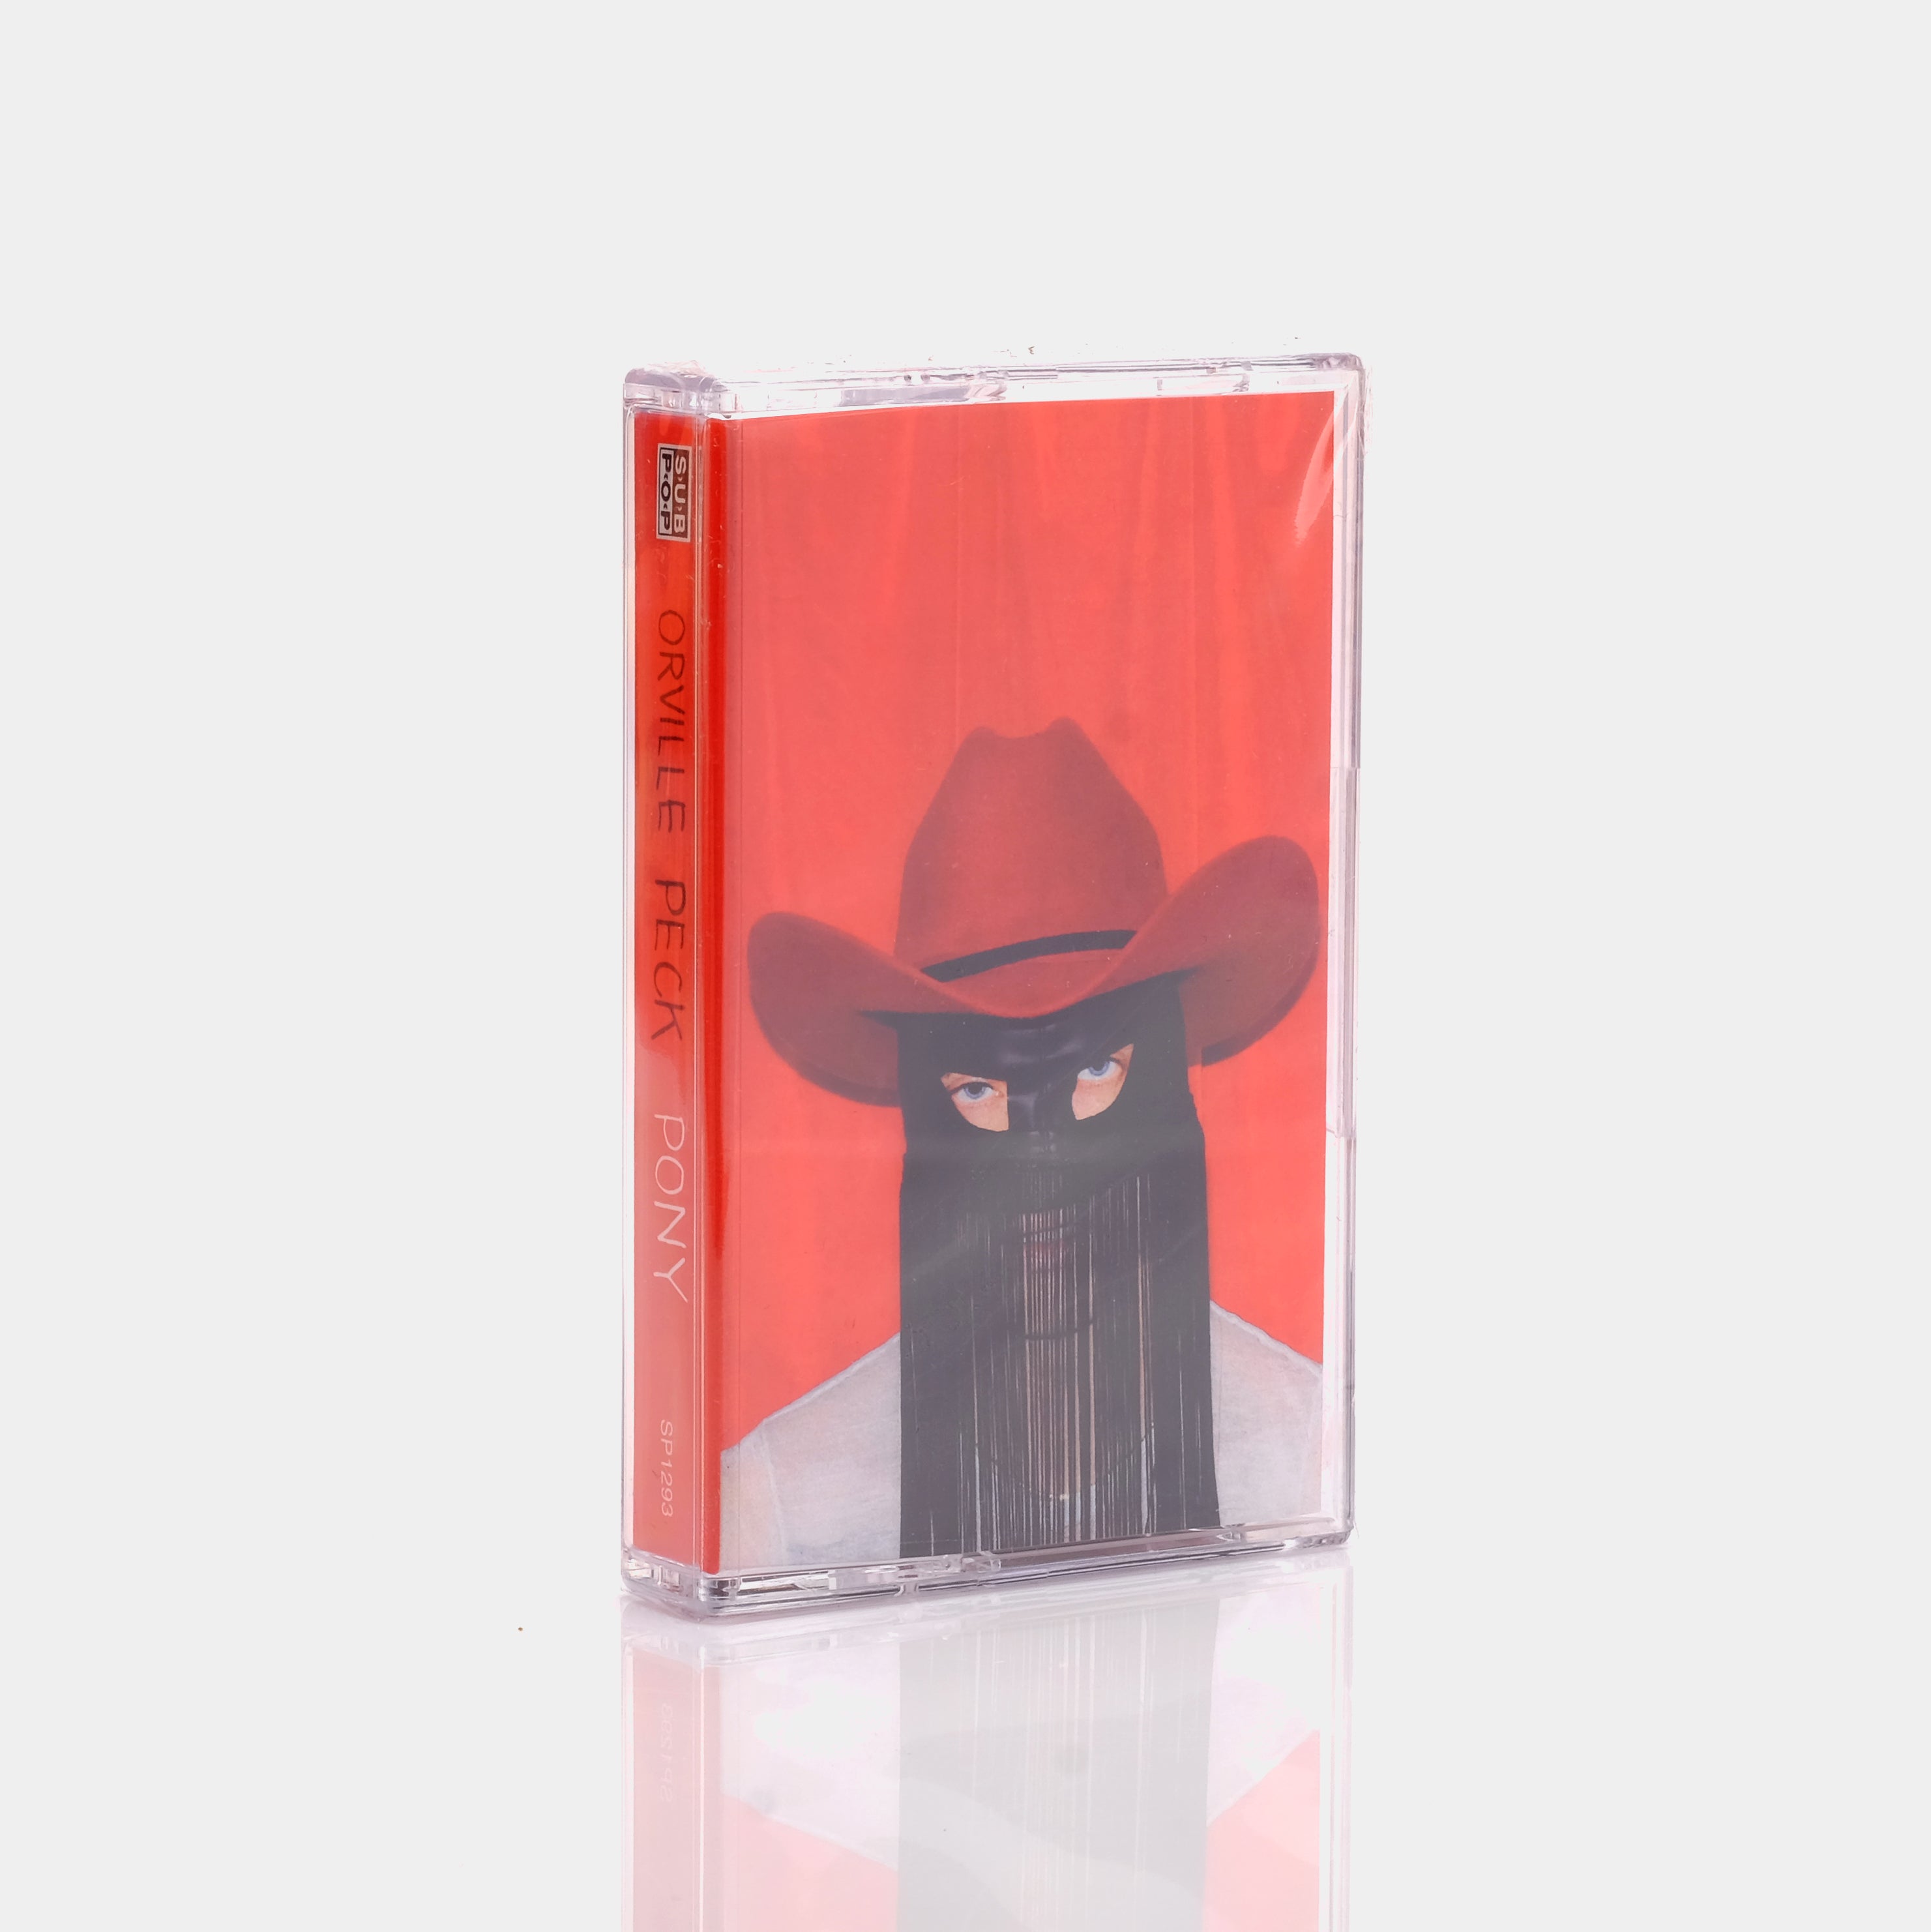 Orville Peck - Pony (2019) Cassette Tape